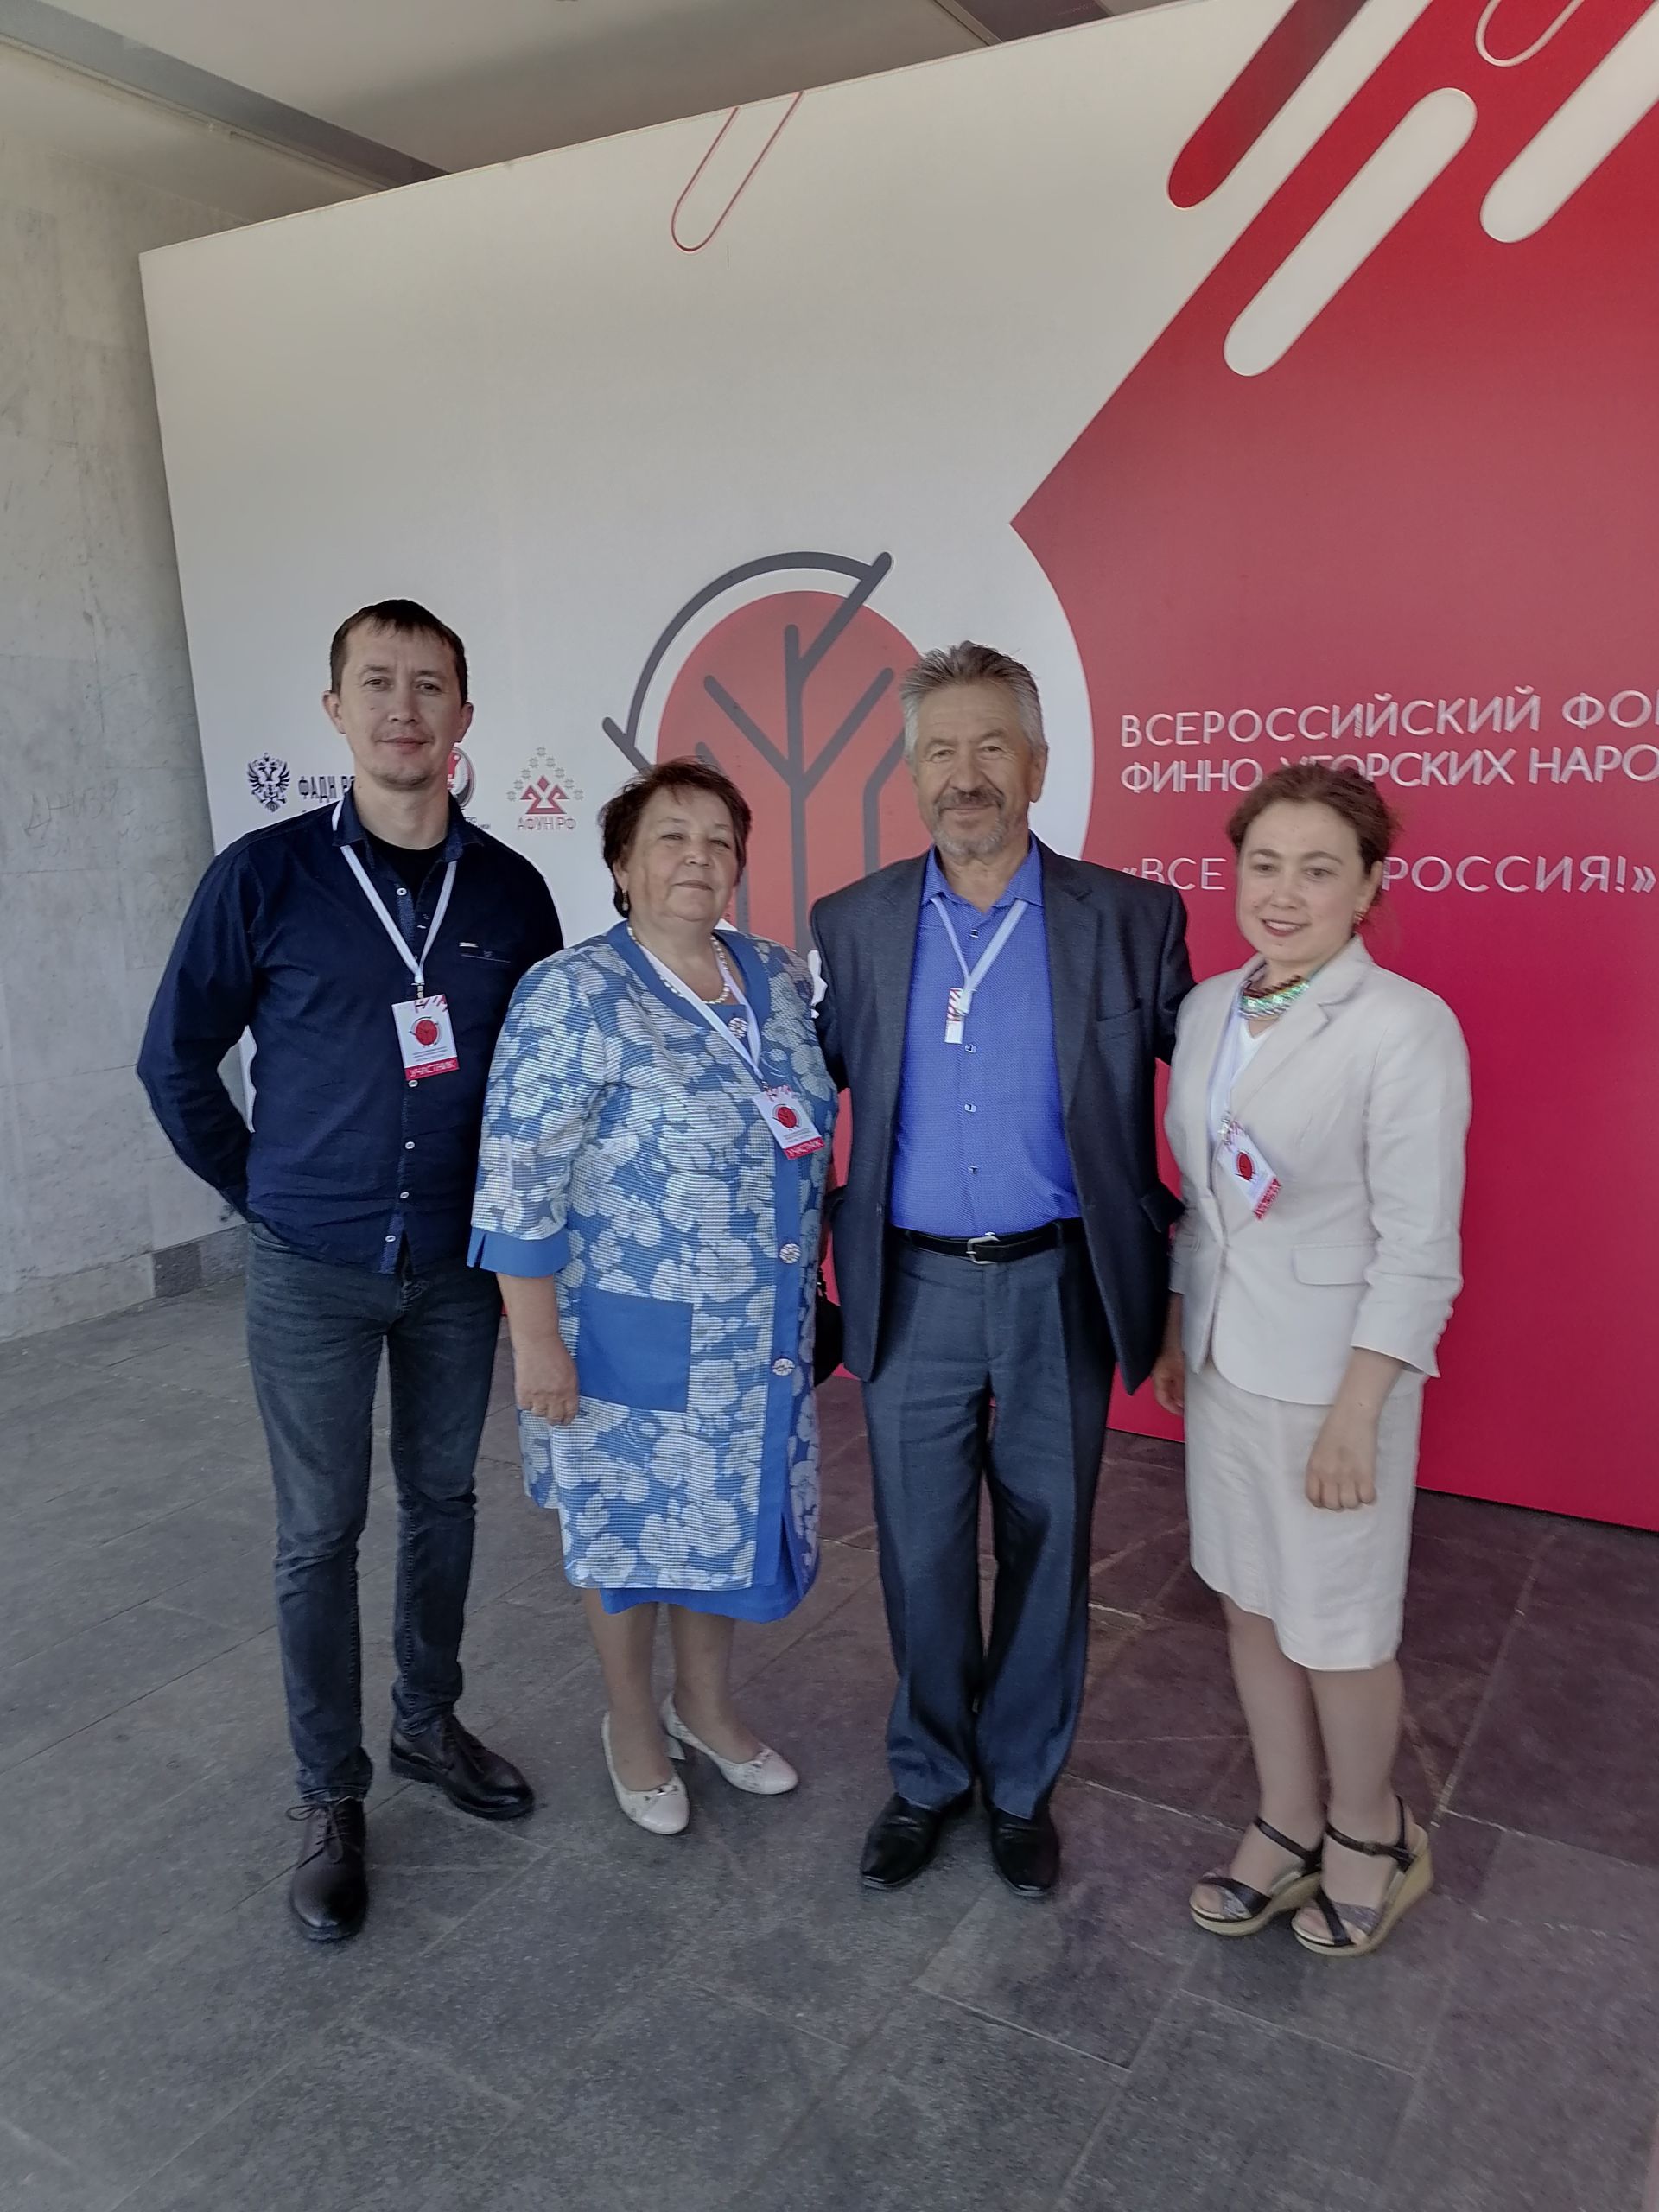 Агрызцы приняли активное участие на Всероссийском форуме финно-угорских народов